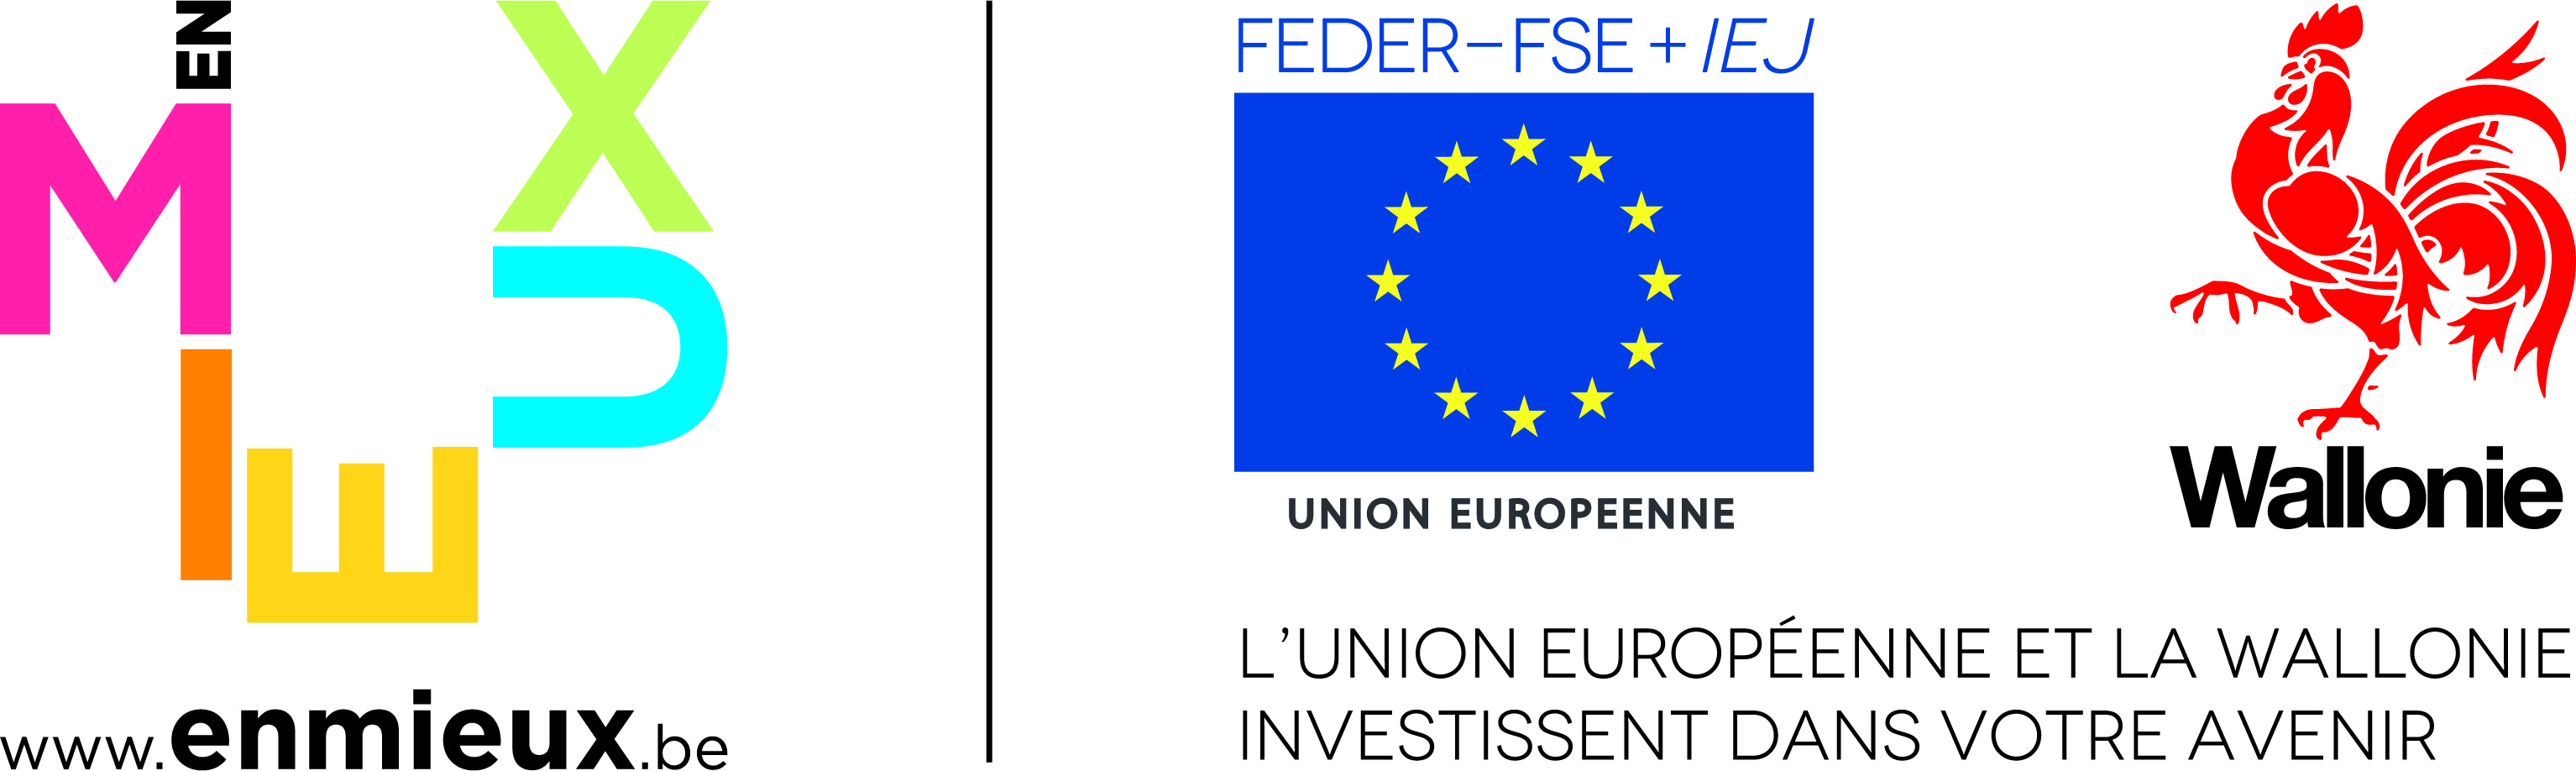 Logo FEDER - FSE